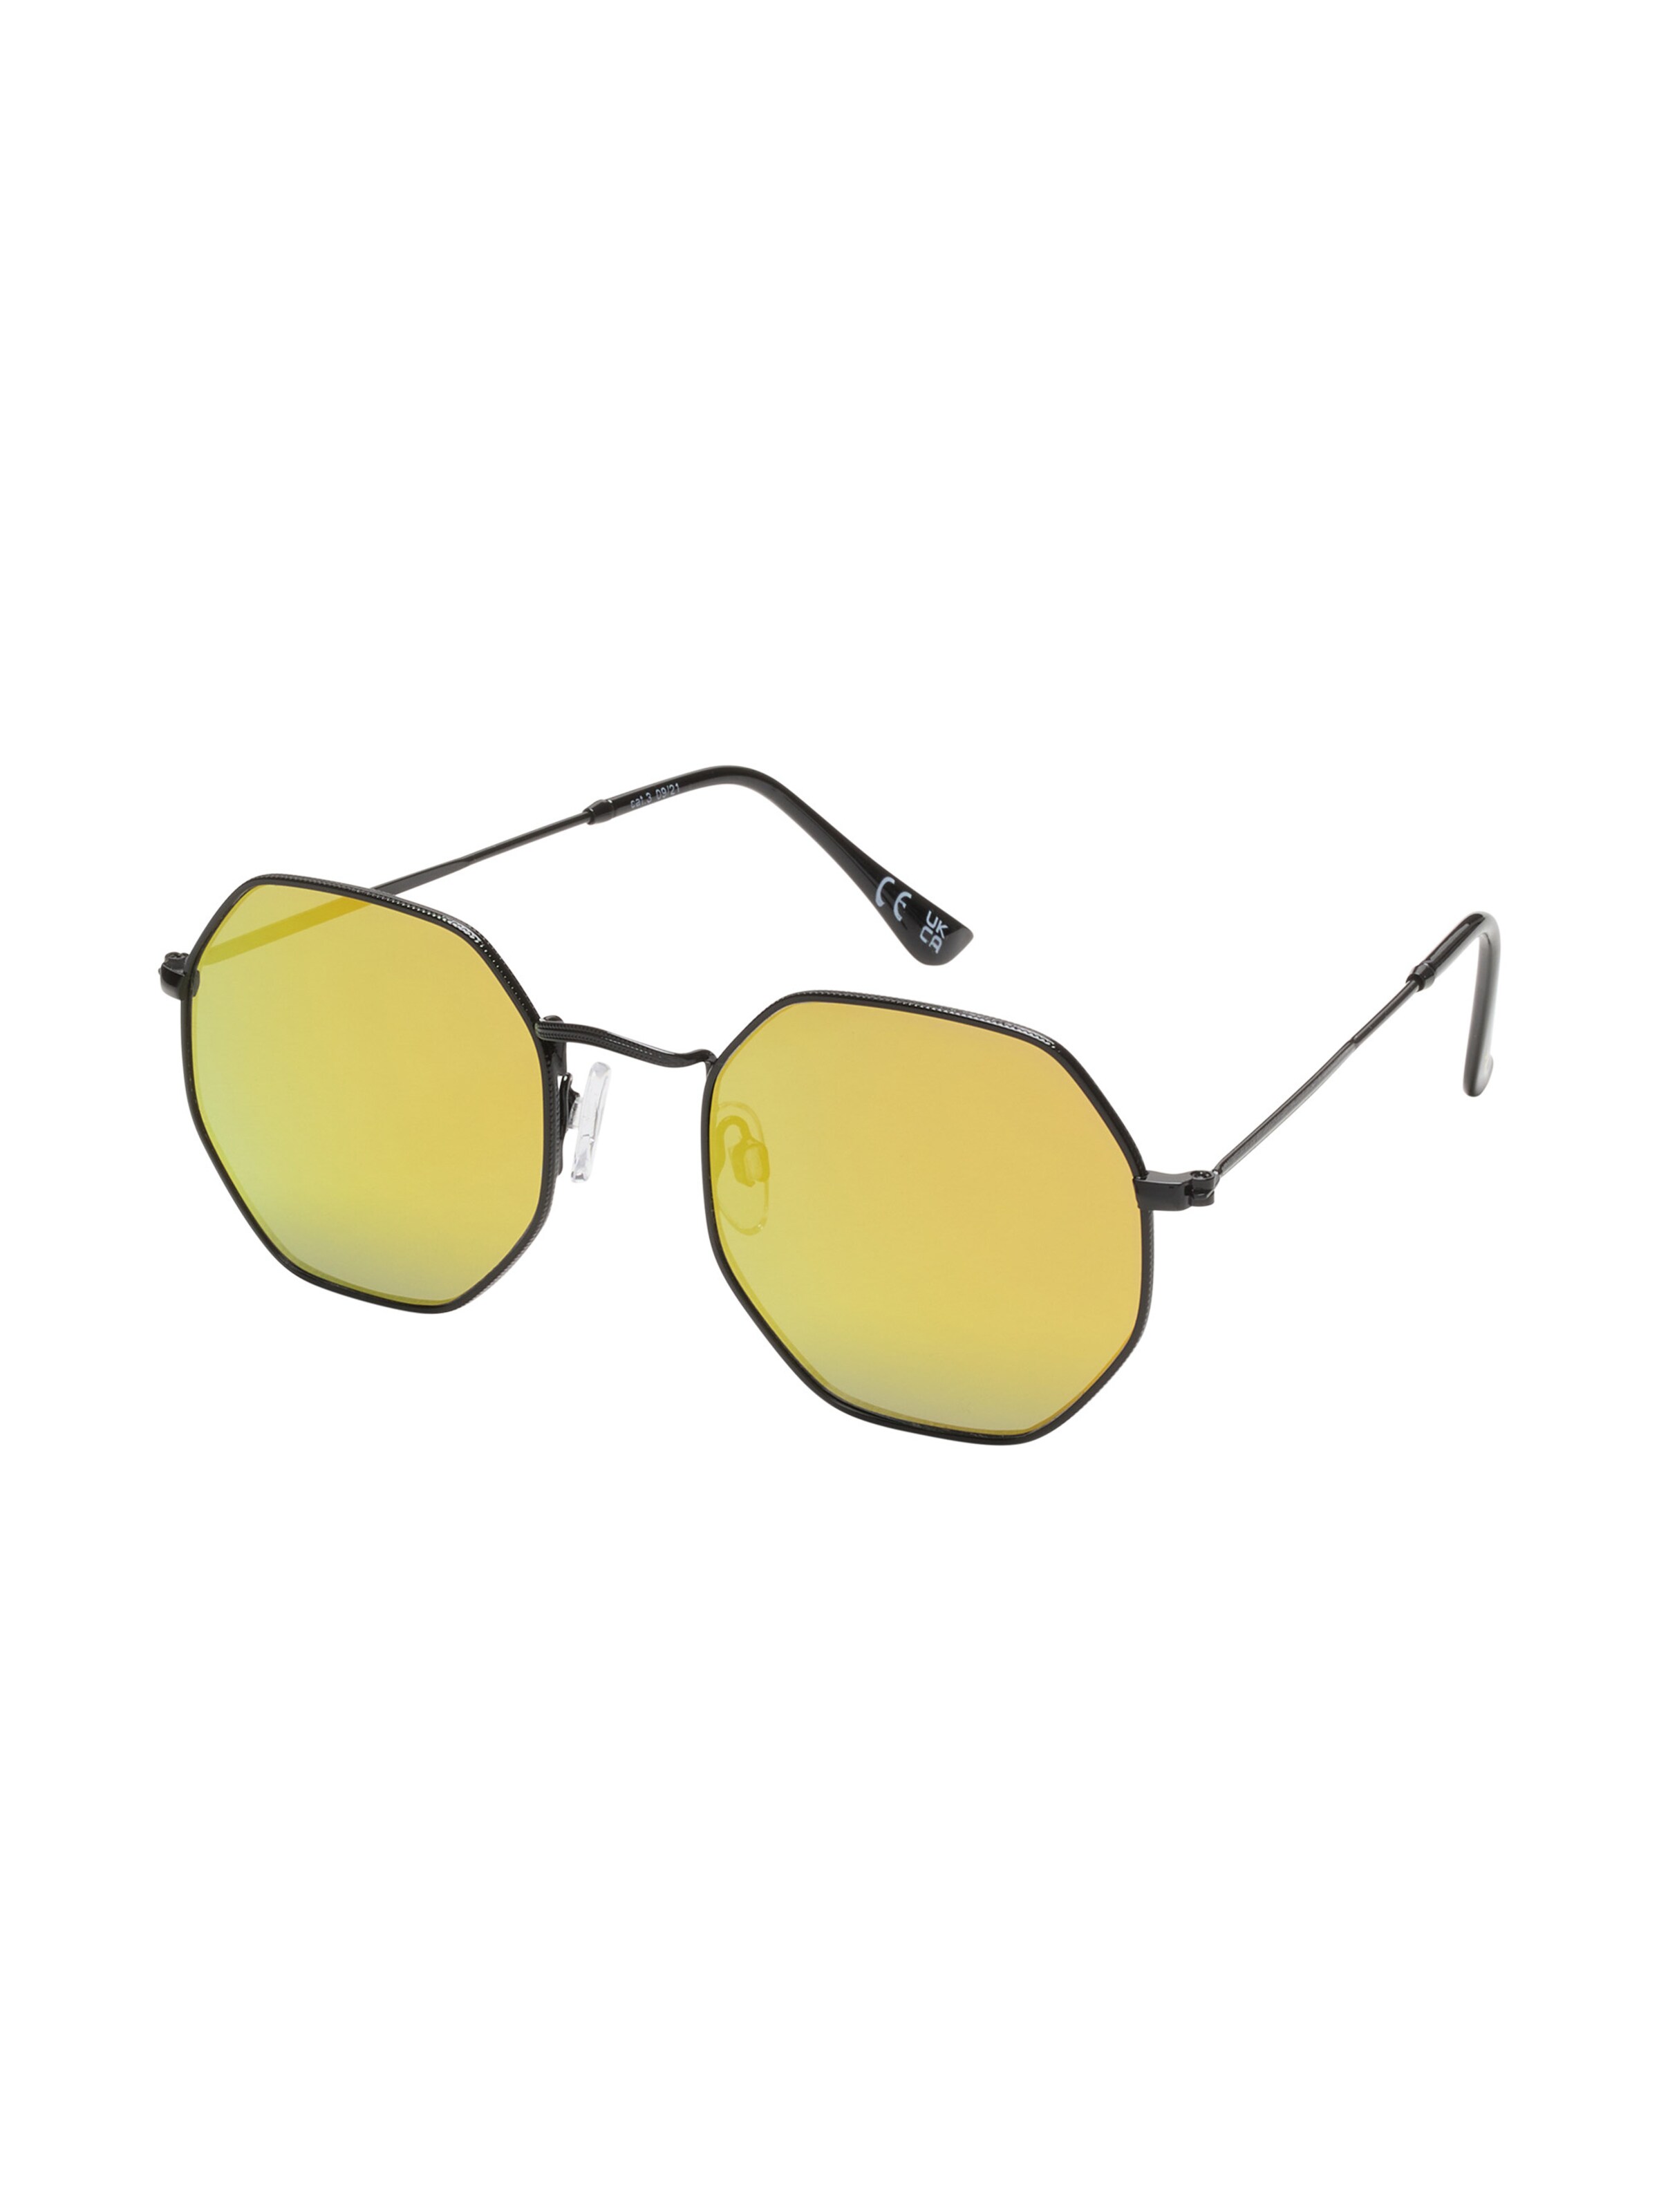 Frauen Sonnenbrillen Six Sonnenbrille in Gelb - LM38230